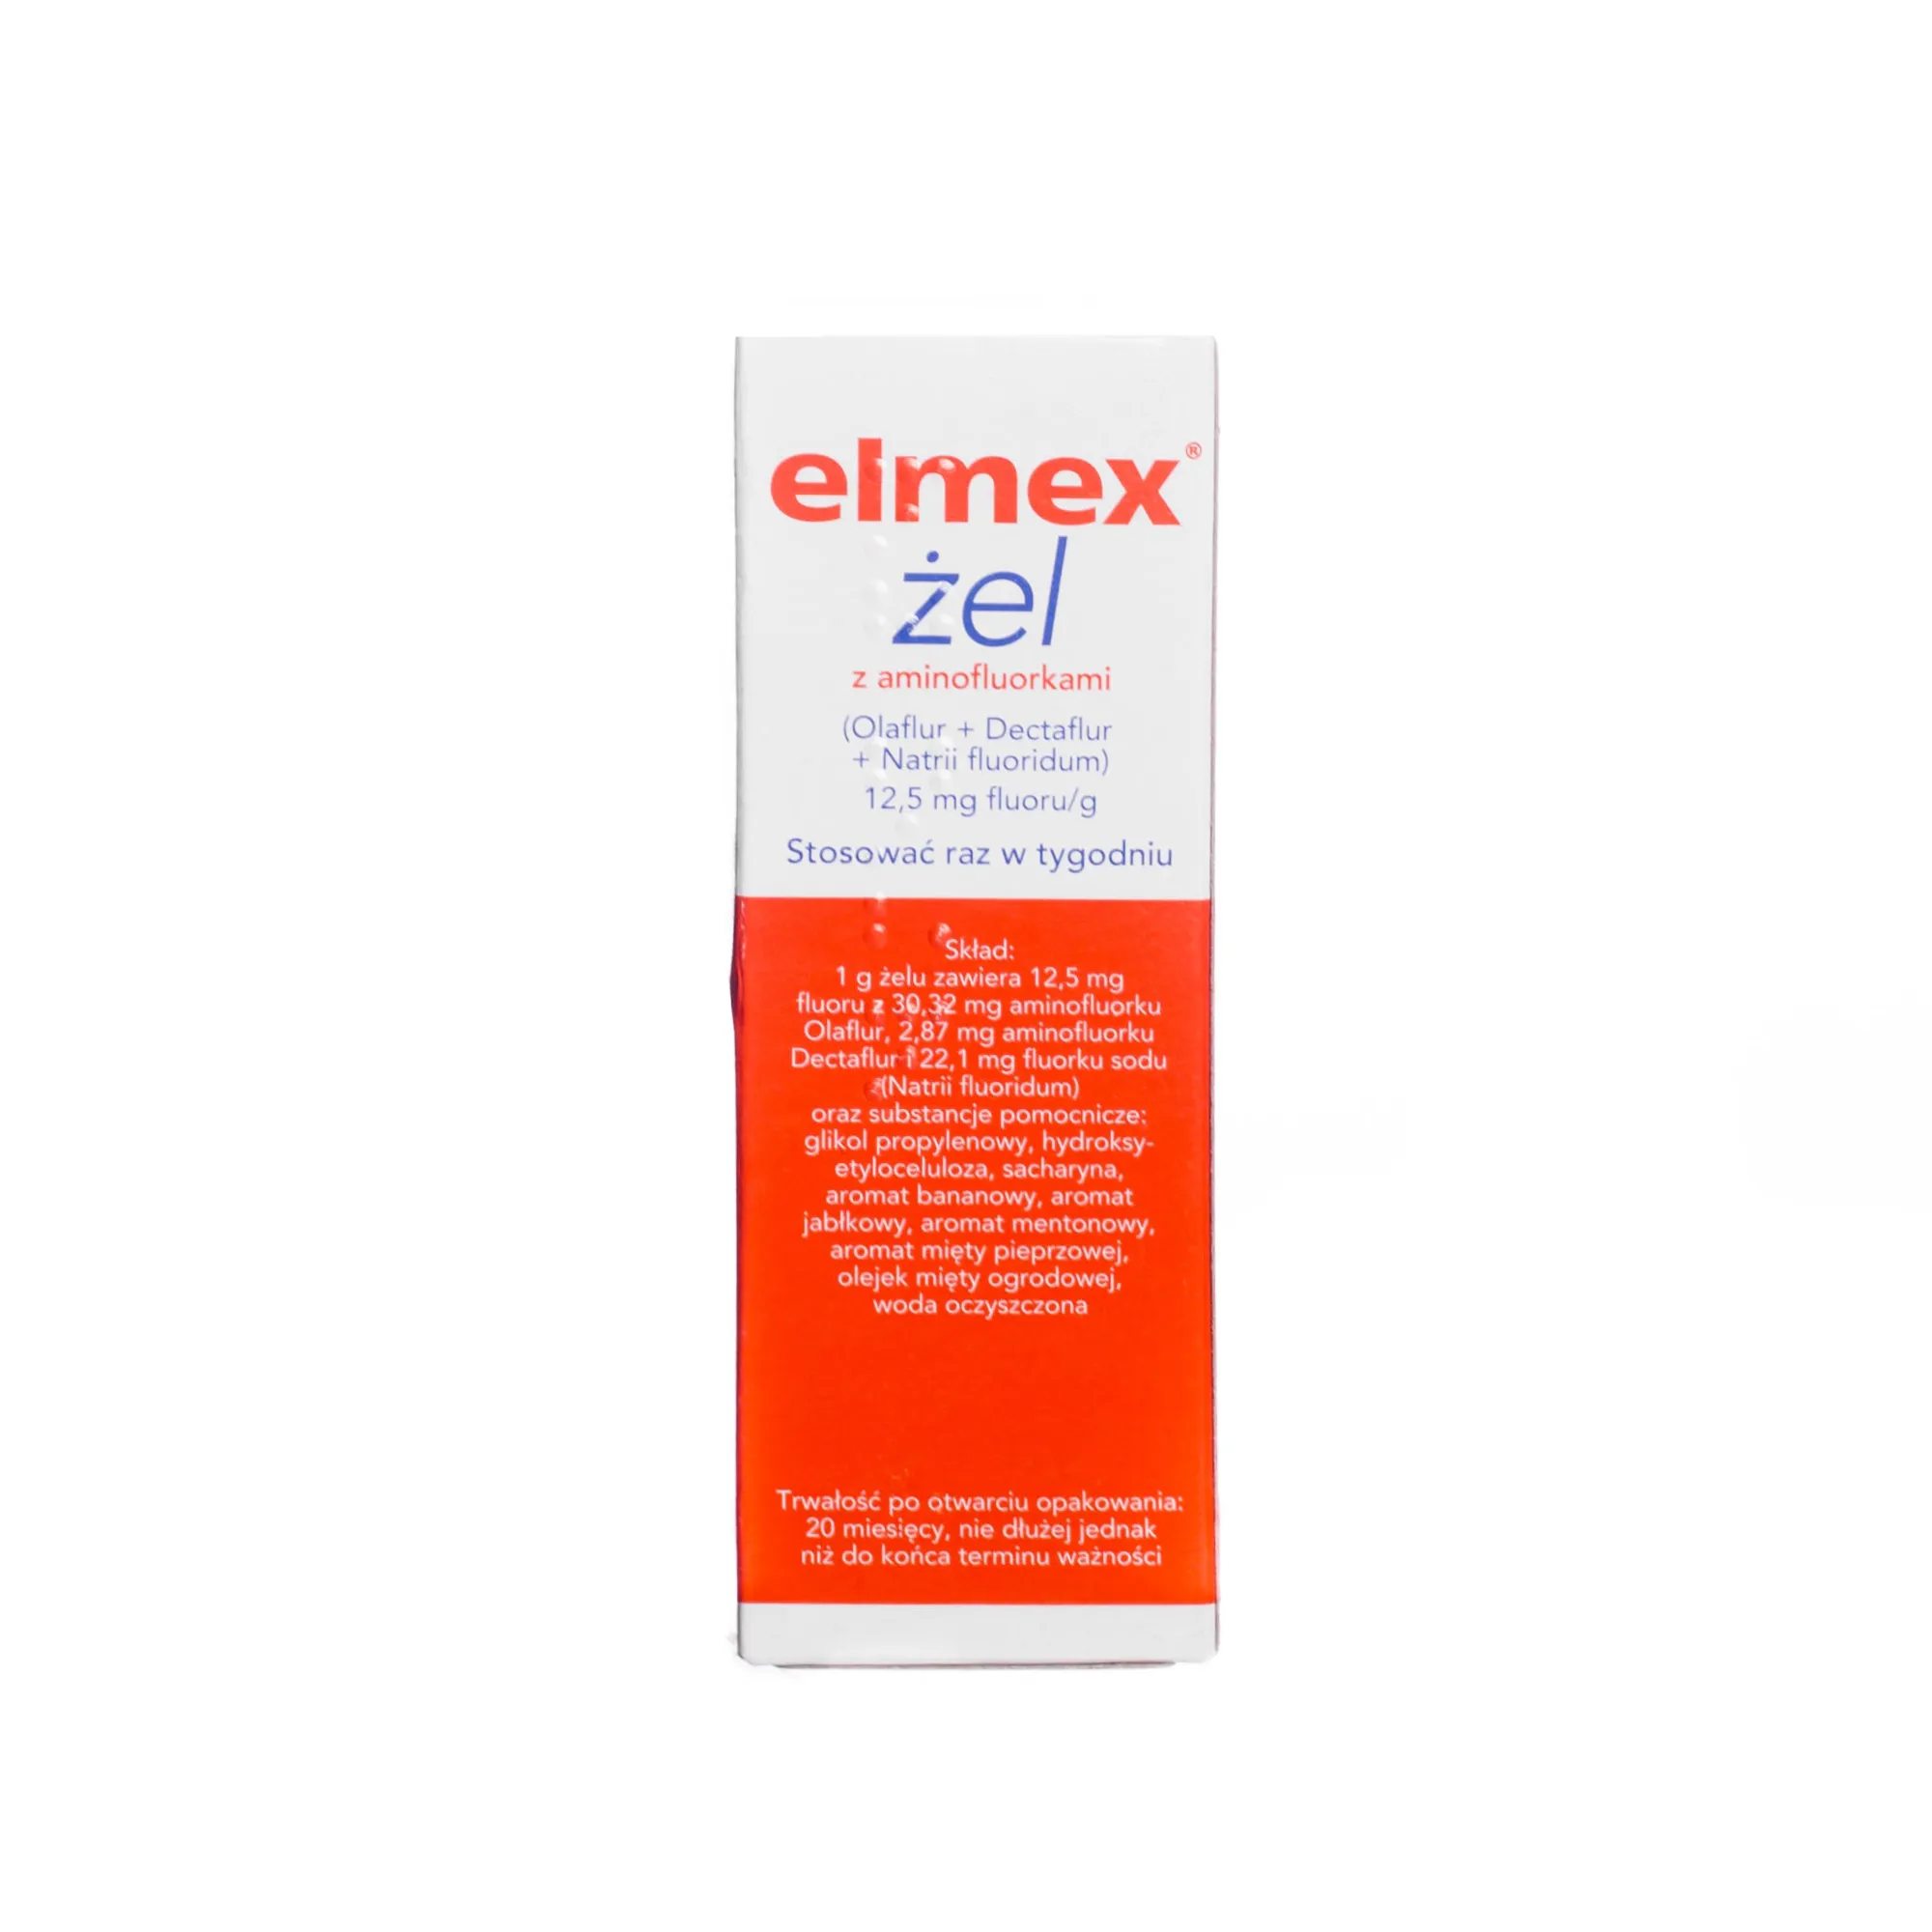 Elmex, 12,5 mg fluoru/g, żel, 25 g 